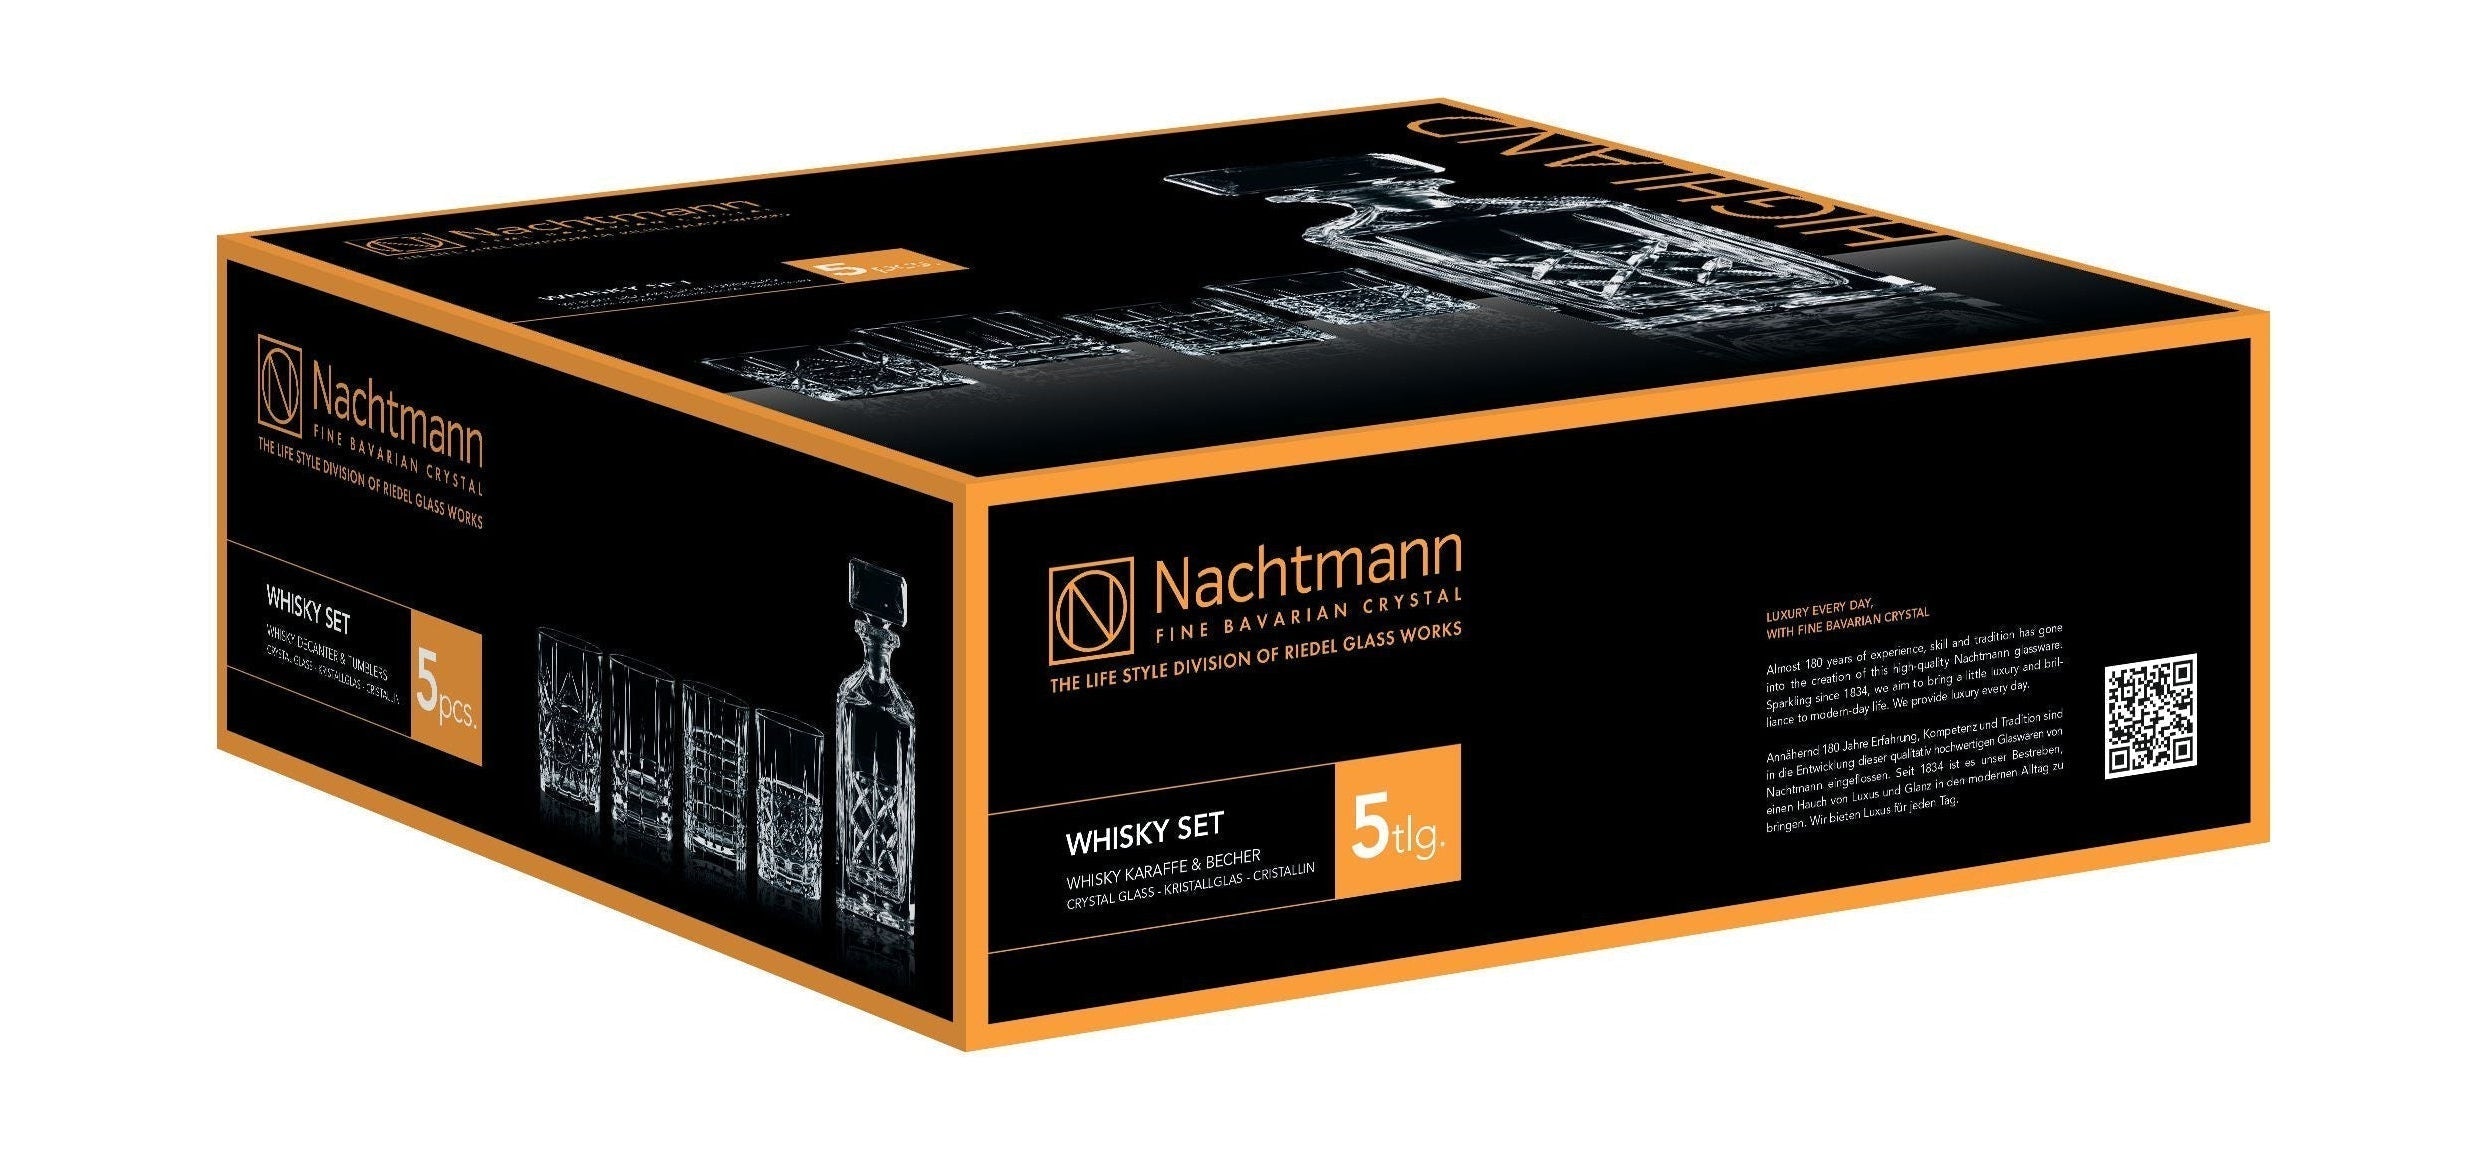 Nachtmann Highland Whisky Sæt, 1 Carafe + 4 glös